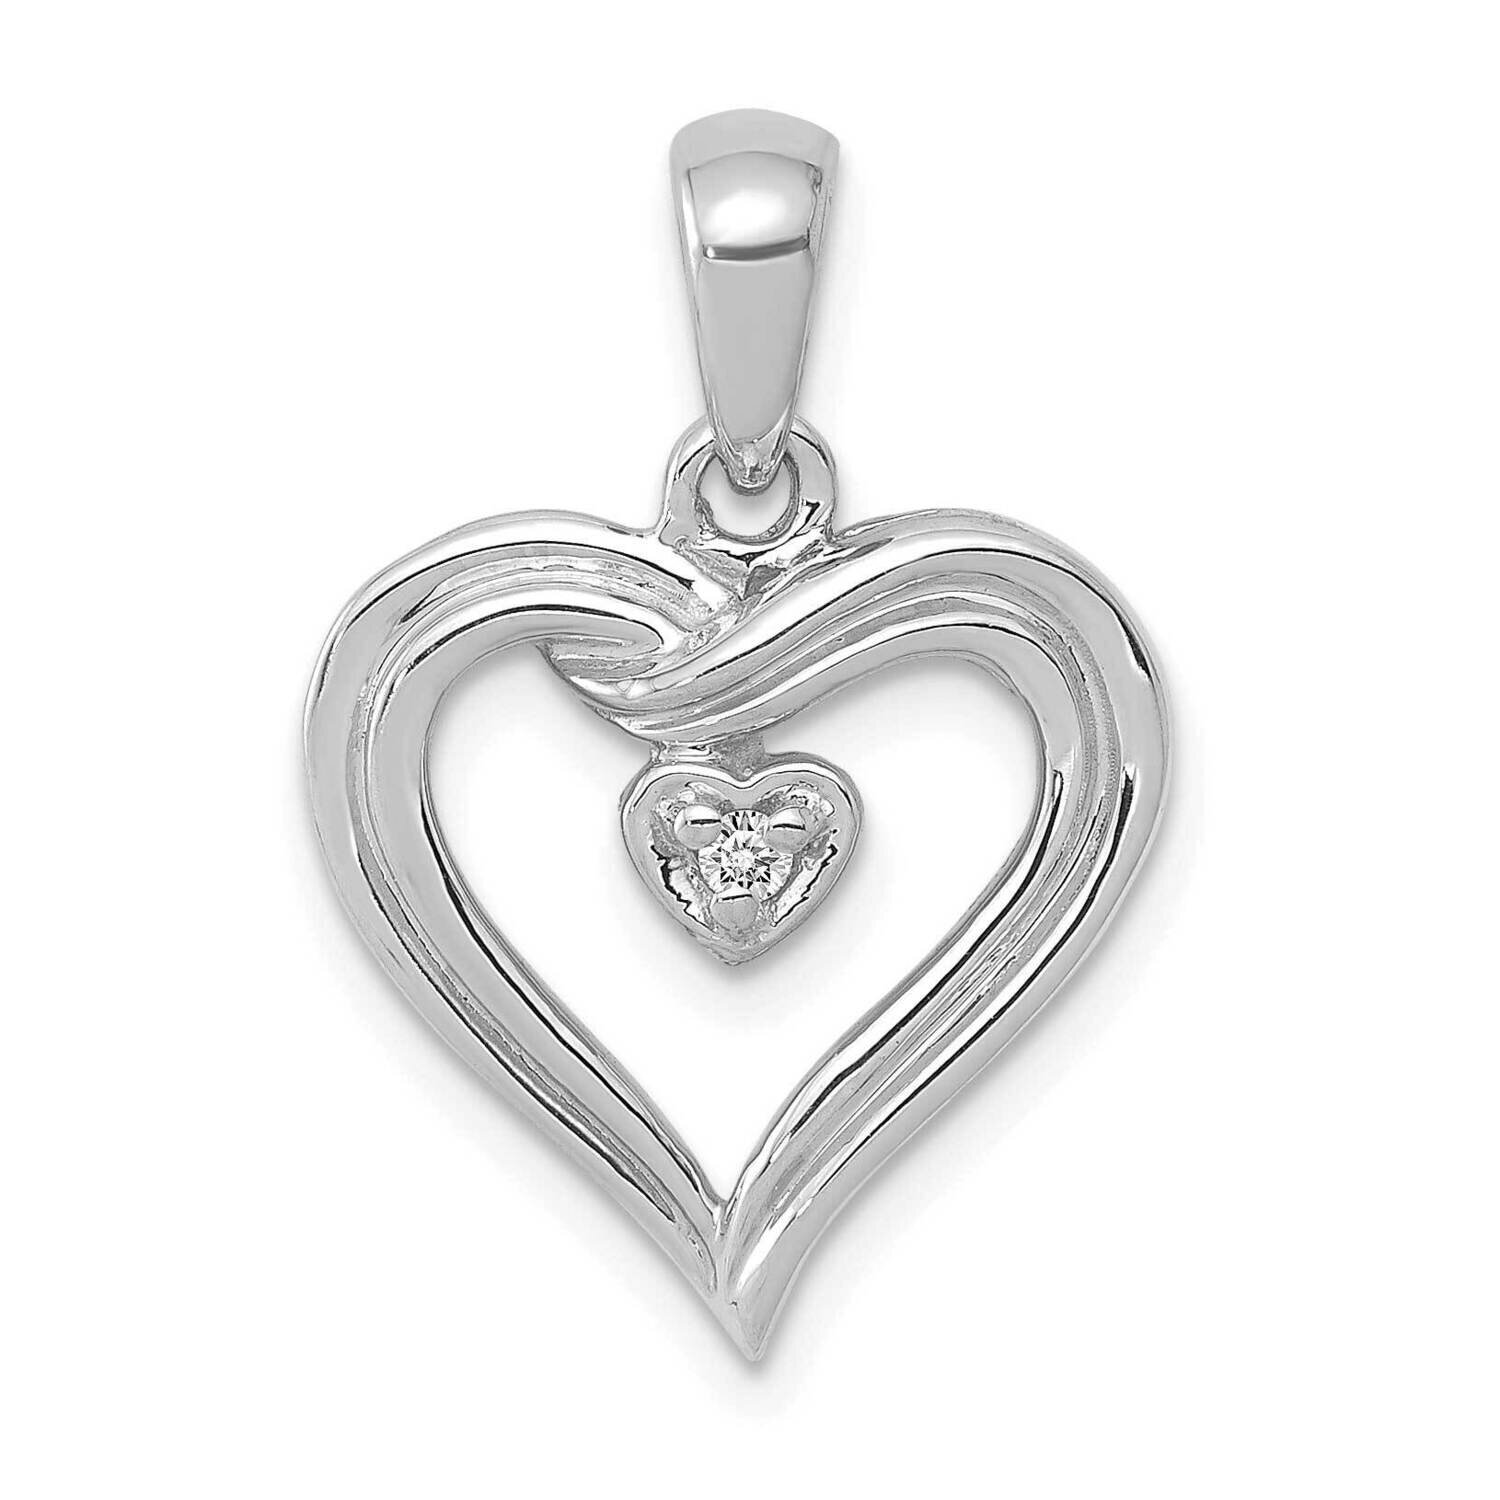 Aa Diamond Heart Pendant 14k White Gold PM4843-002-WA